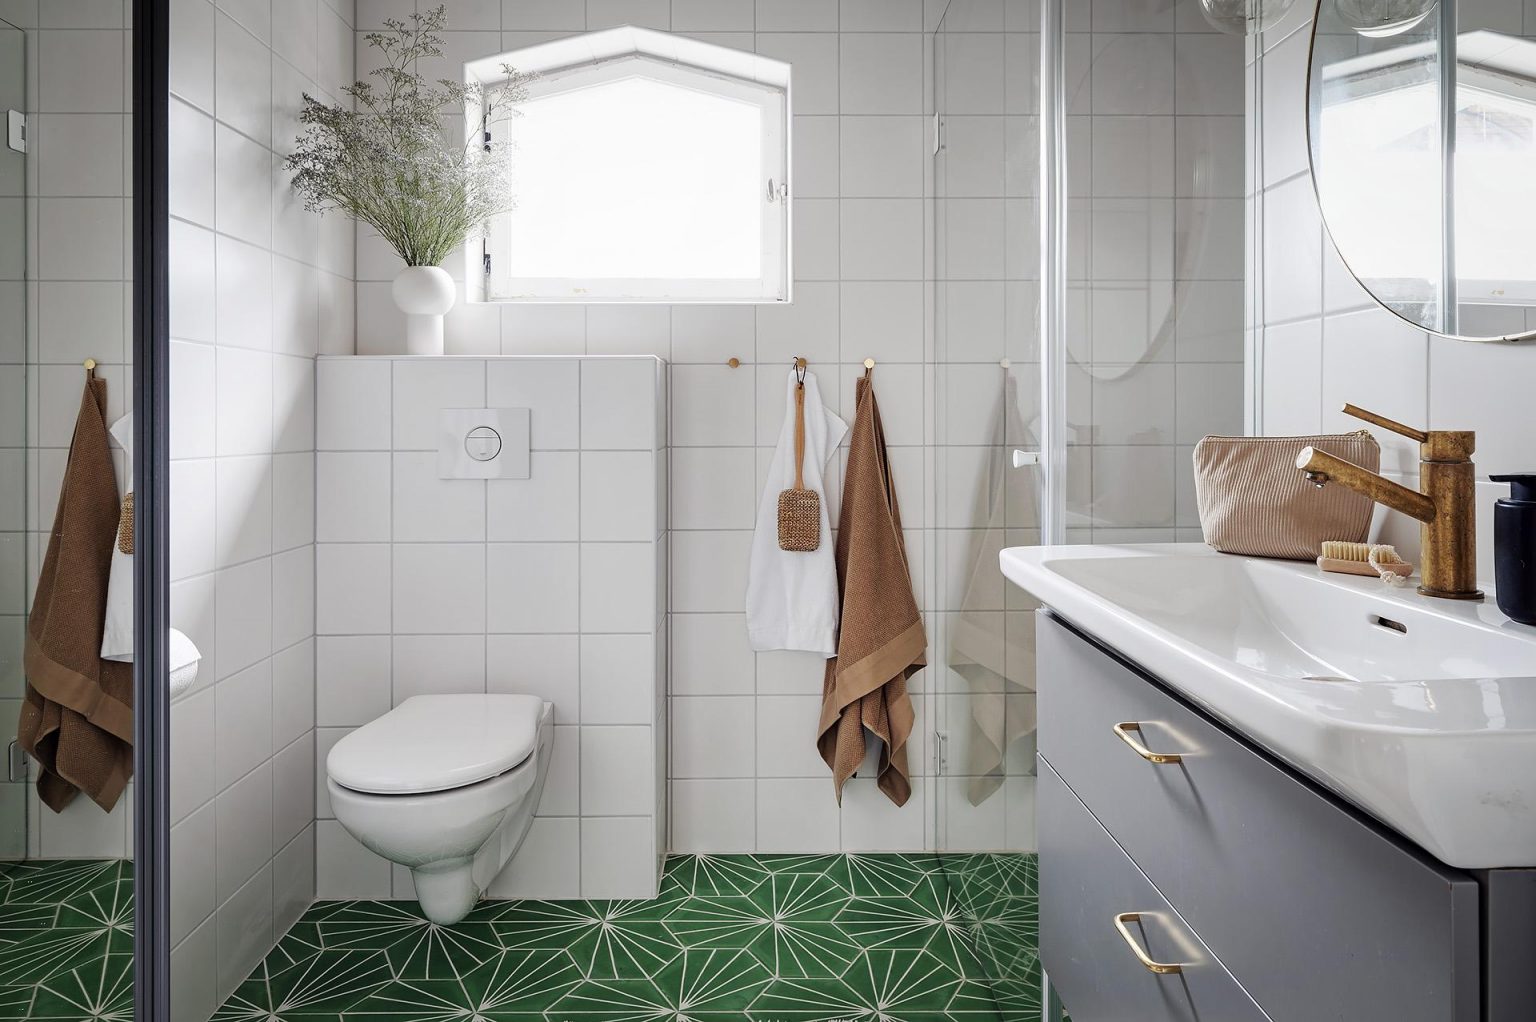 salle de bain carrelage dandelion vert décoration scandinave contemporaine